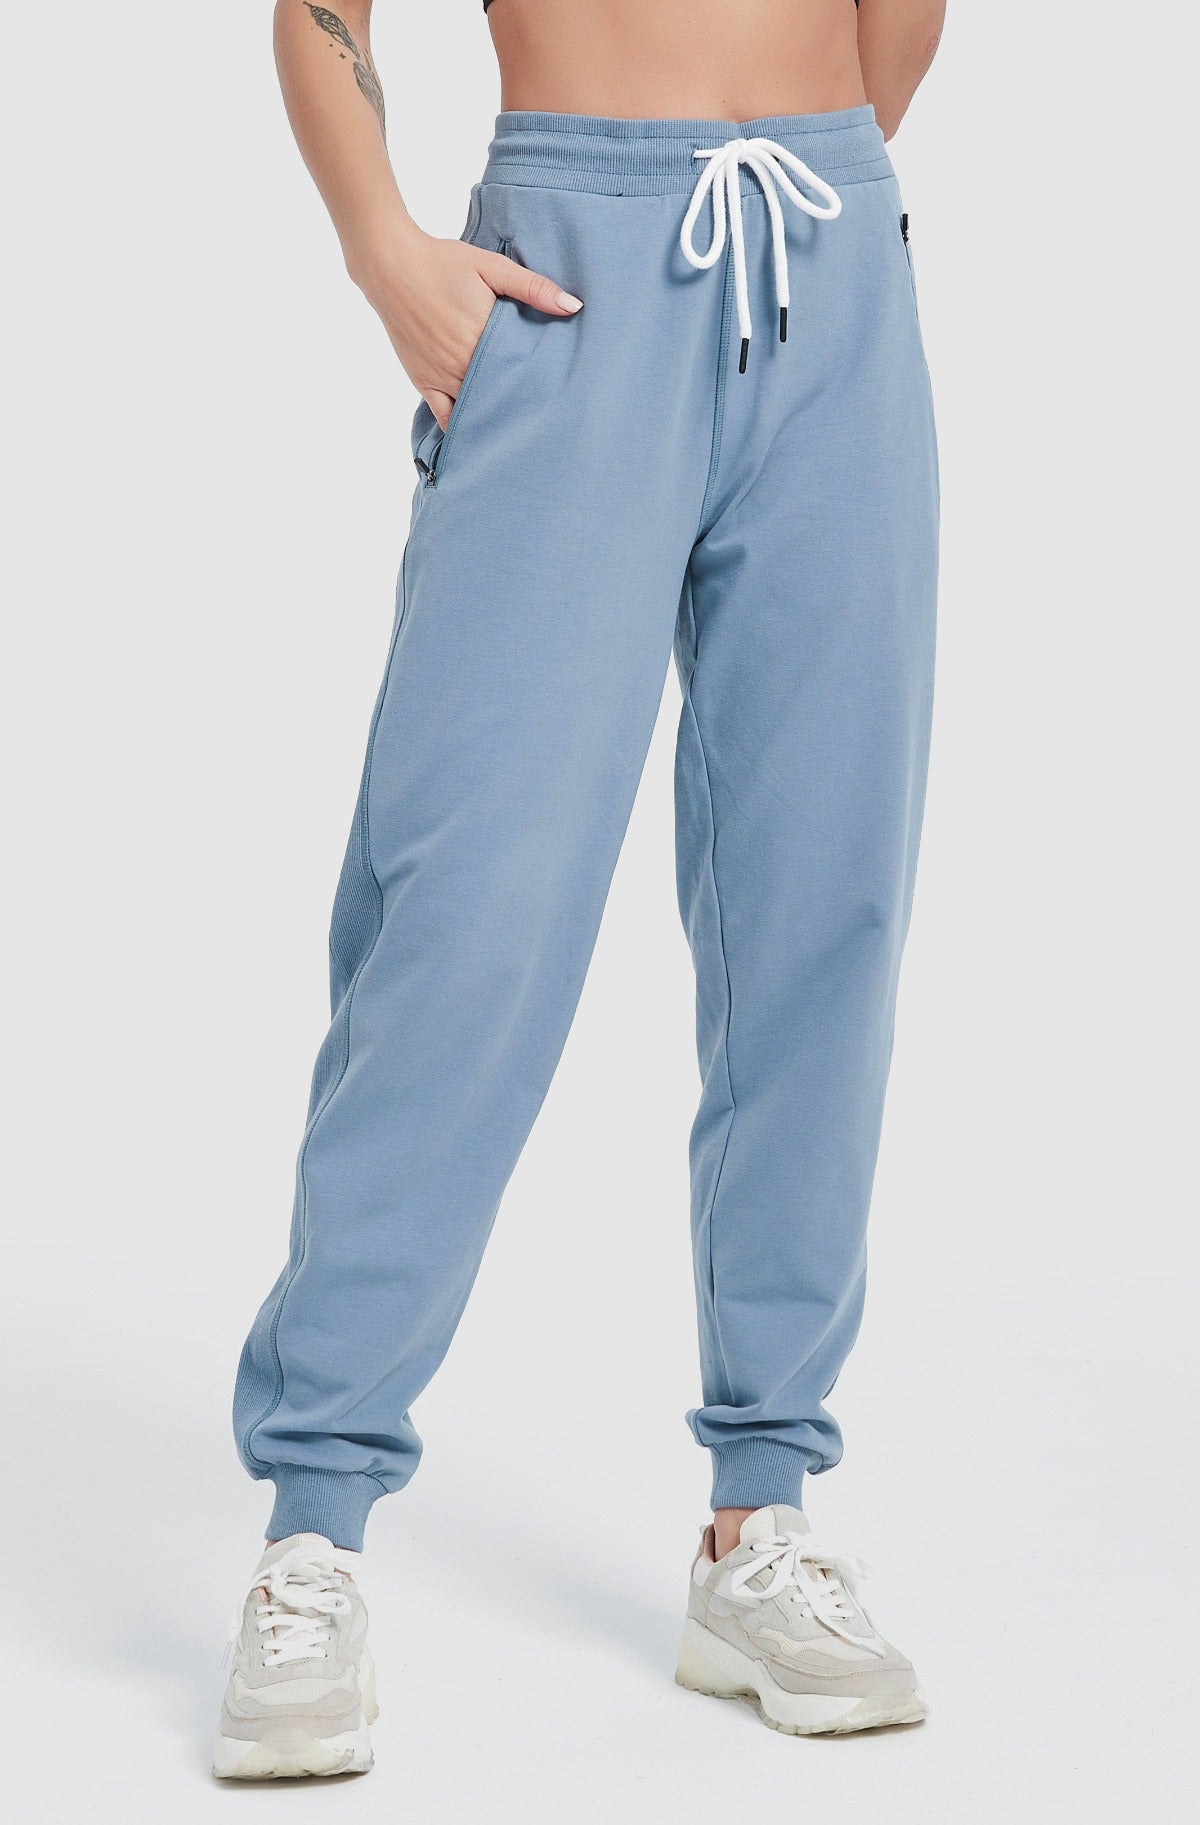 Women Lace Up Sweats Workout Sweatpants  Warm Cotton Jogger with Zipper  Pockets – PULI